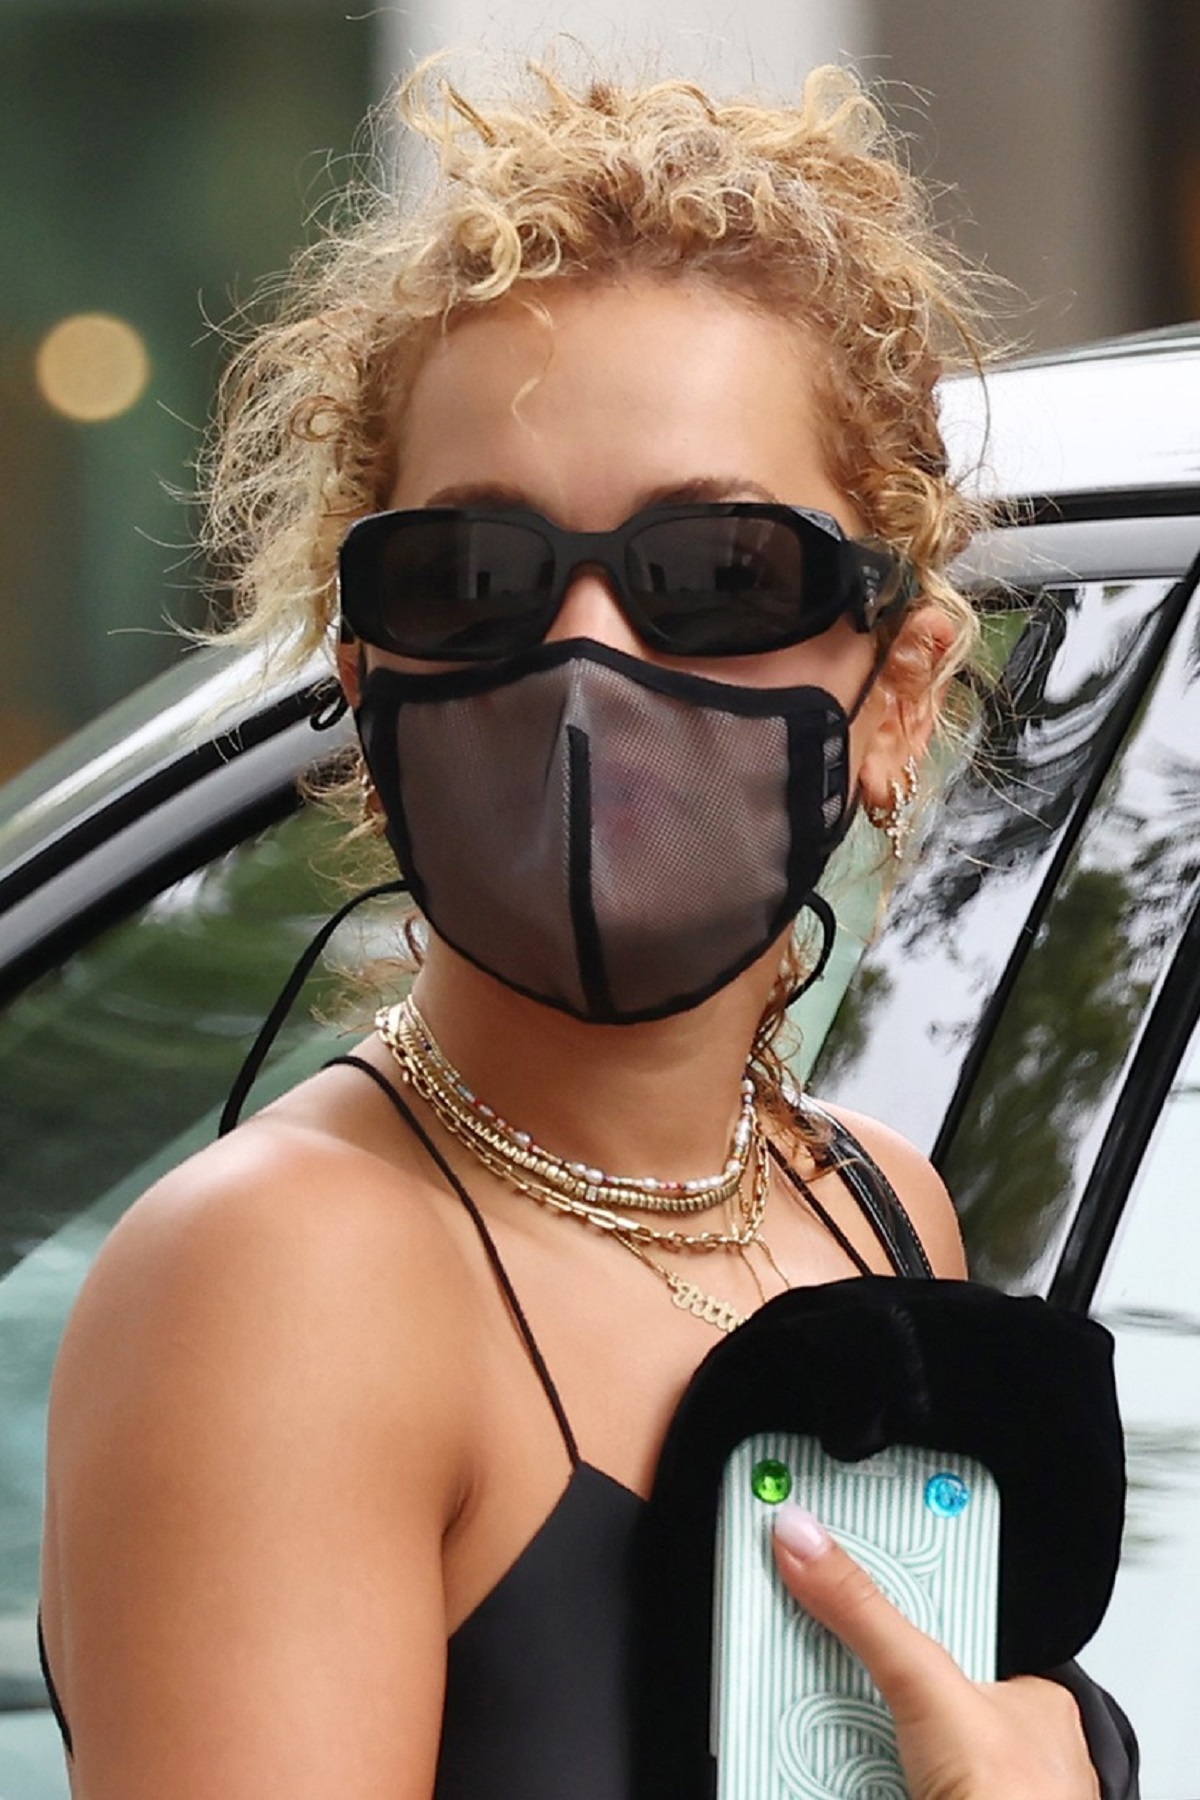 Rita Ora cu ochelari negri și mască de protecție împotriva COVID-19 în timp ce vine la salonul de înfrumusețare